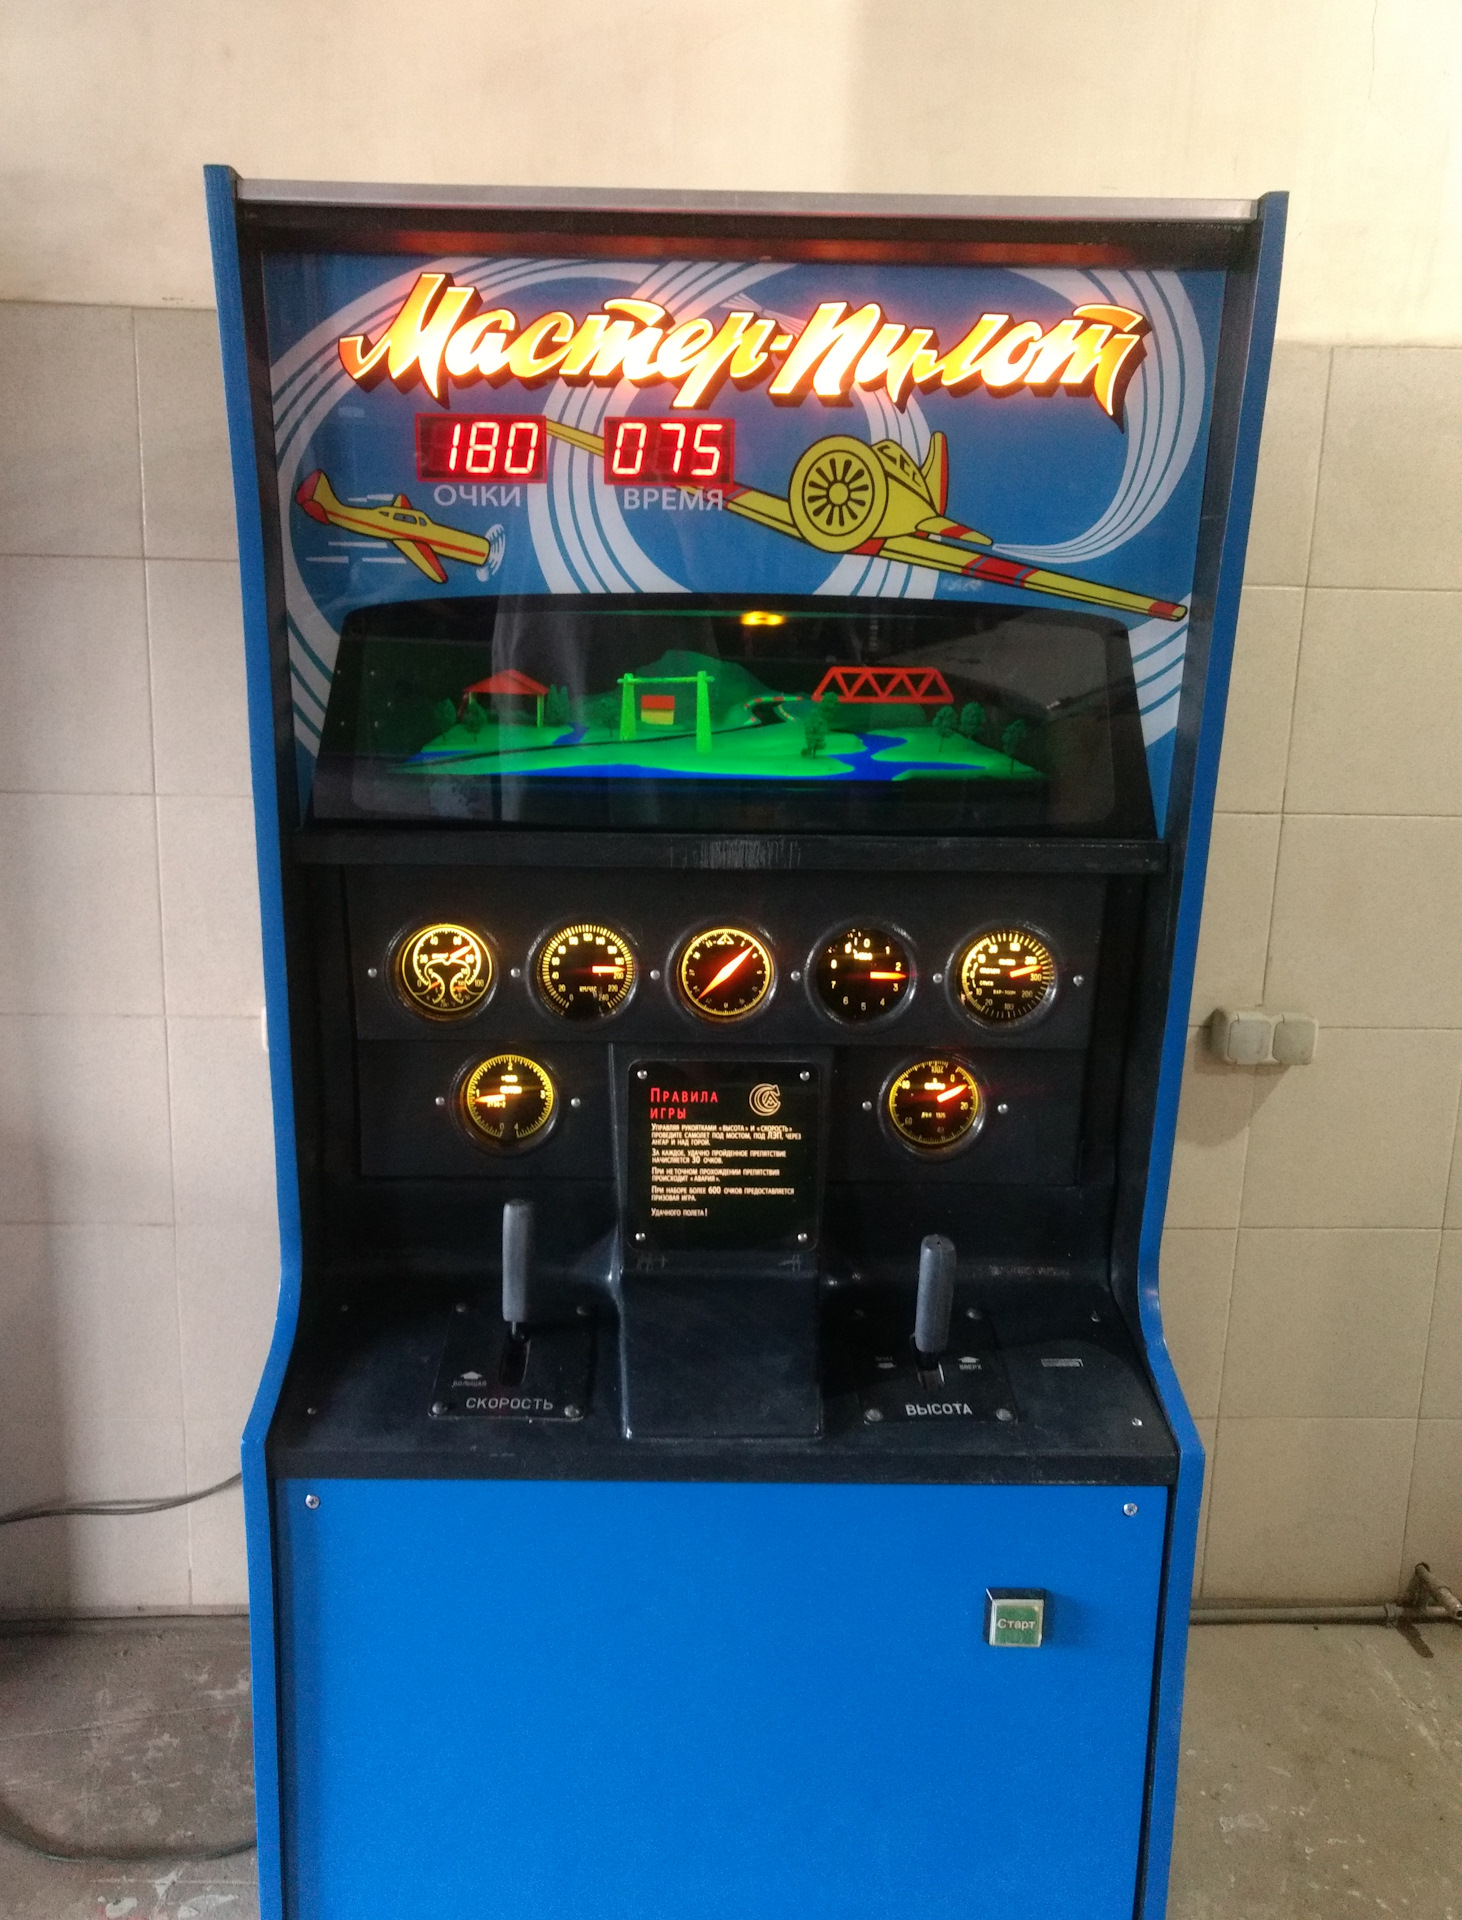 Мастер пилот игровой автомат игровые автоматы онлайн бесплатно максбет